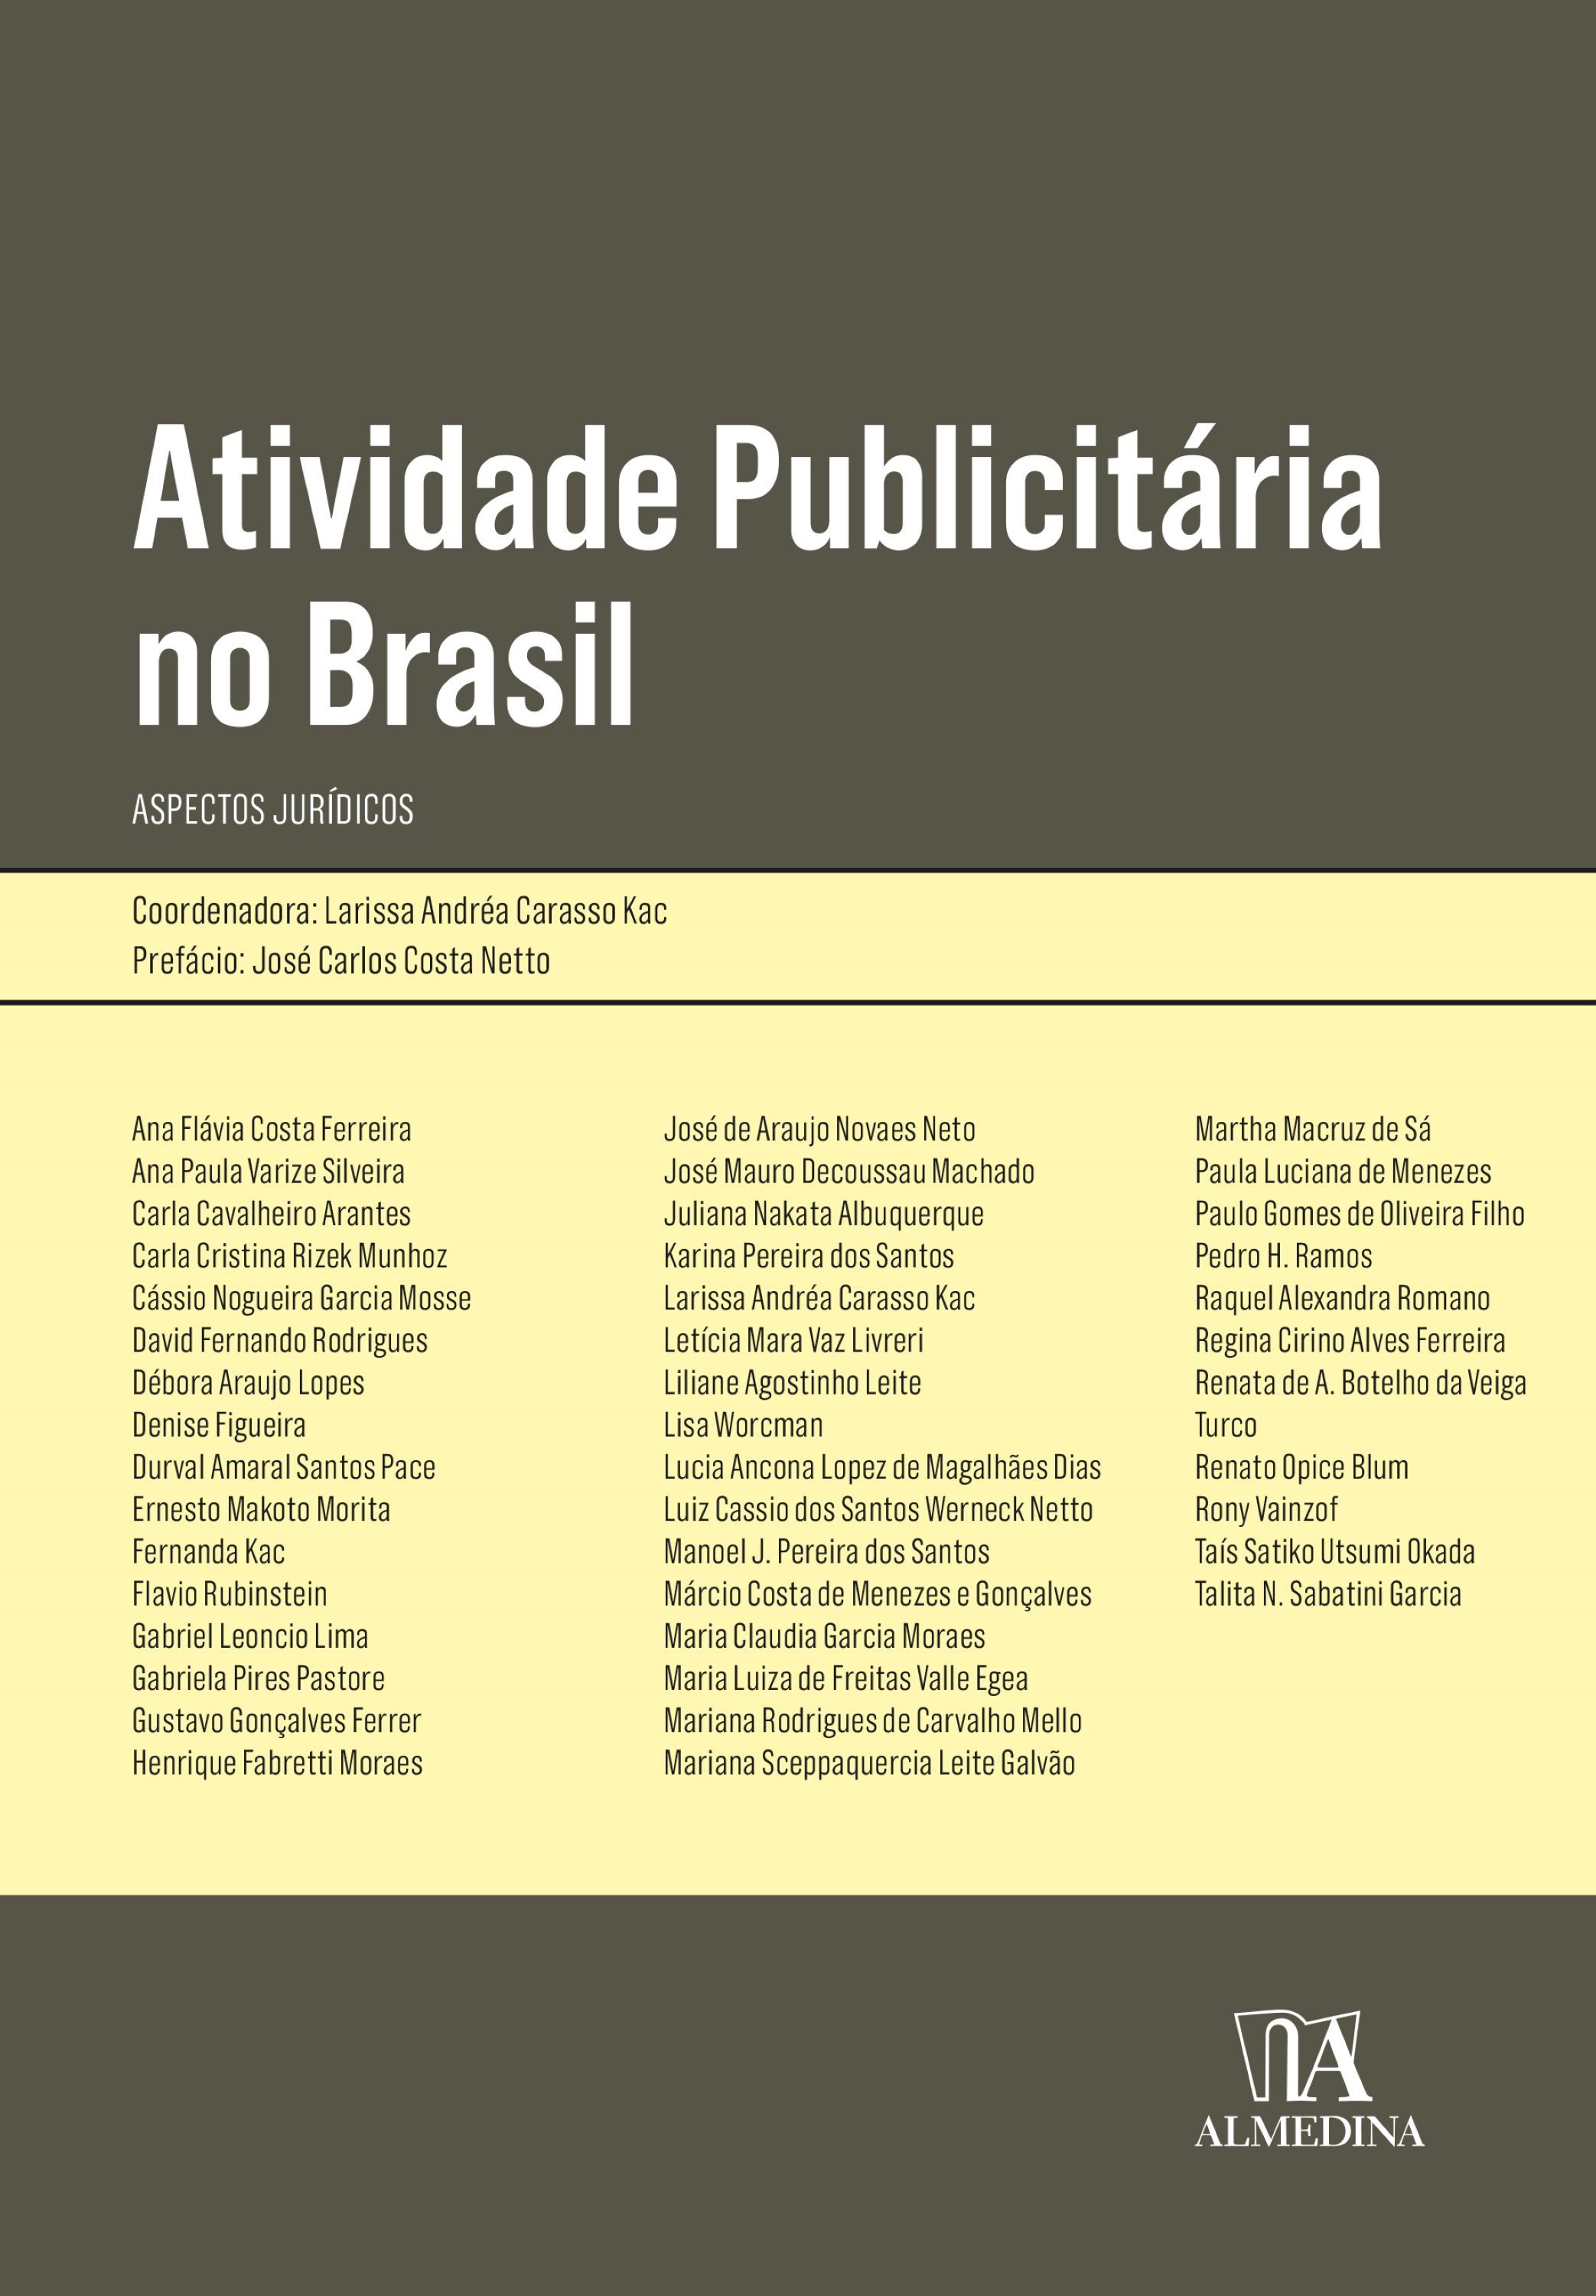 Atividade publicitária no Brasil